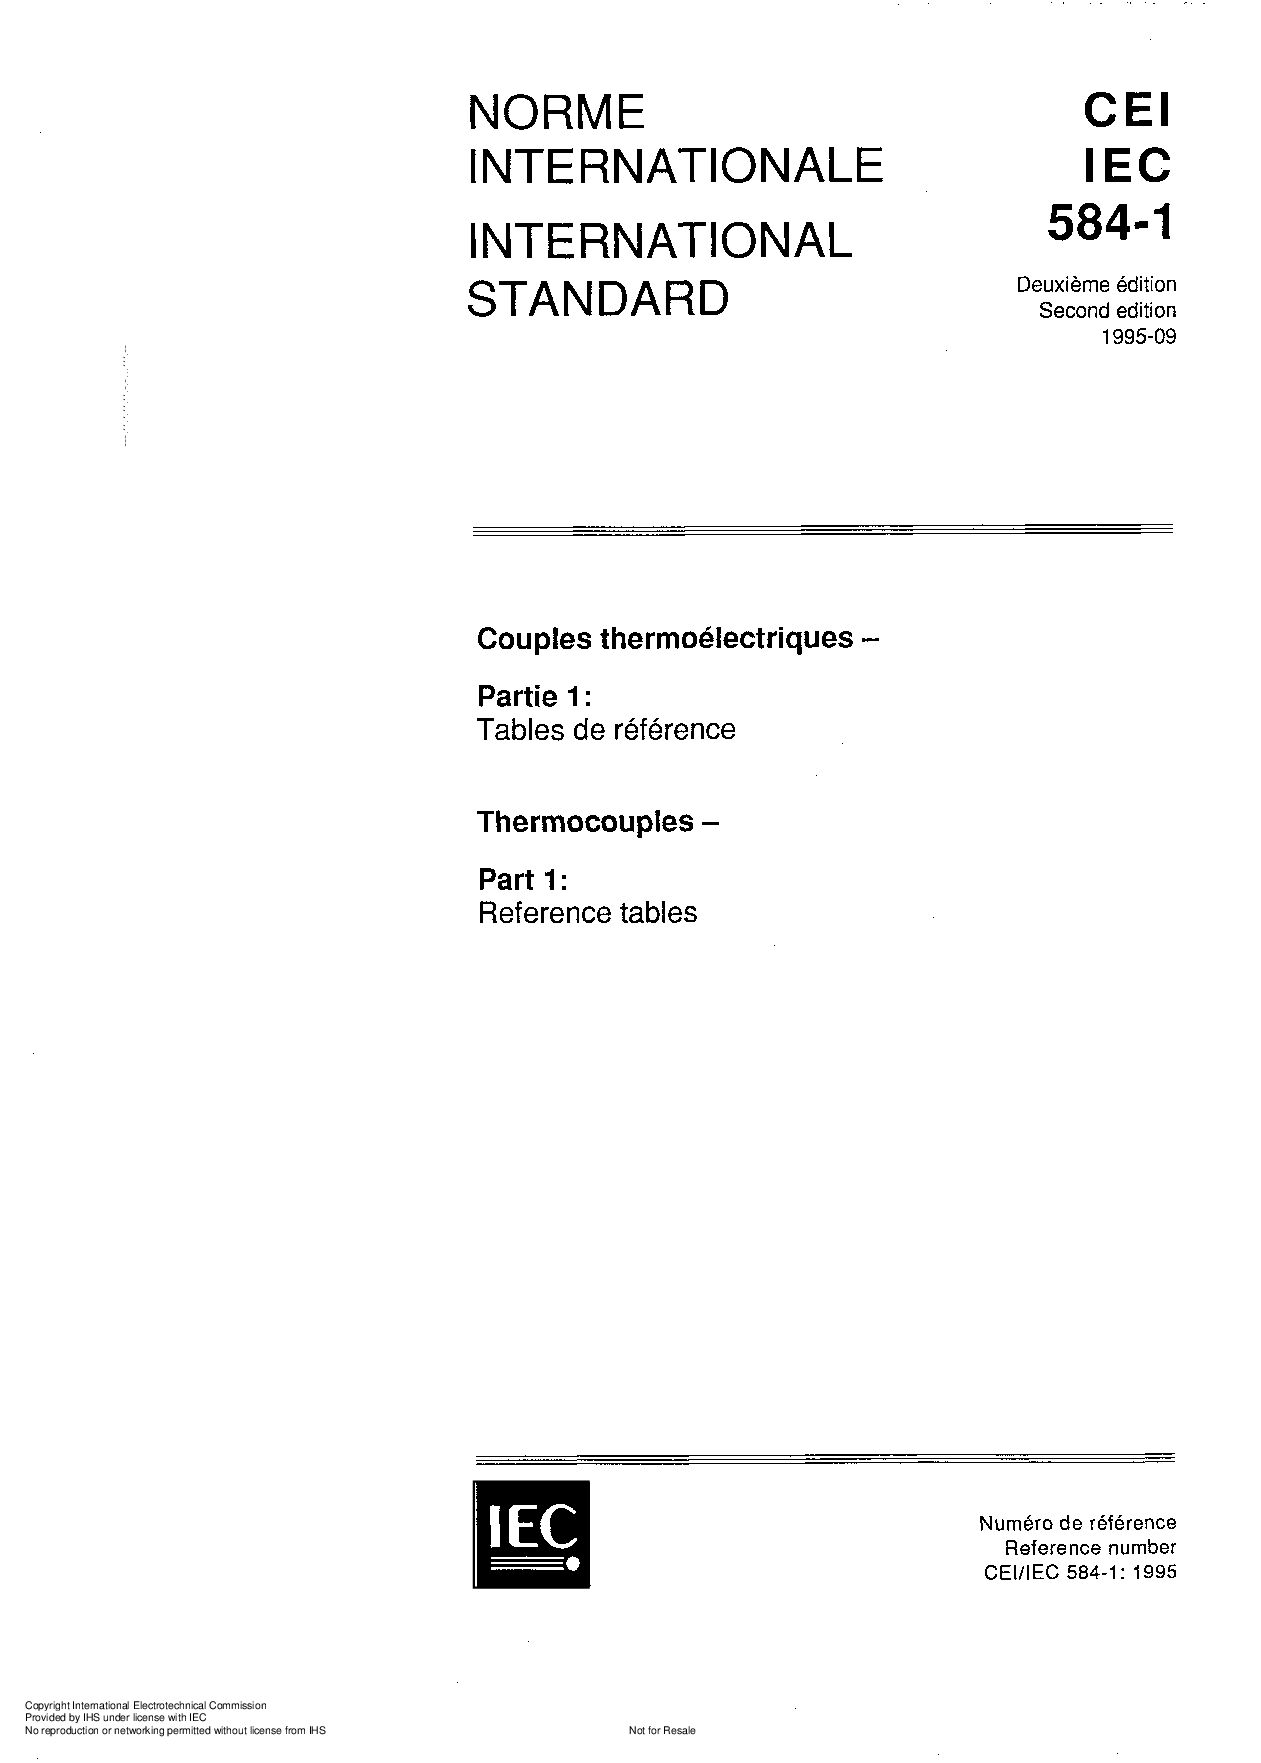 IEC 60584-1:1995